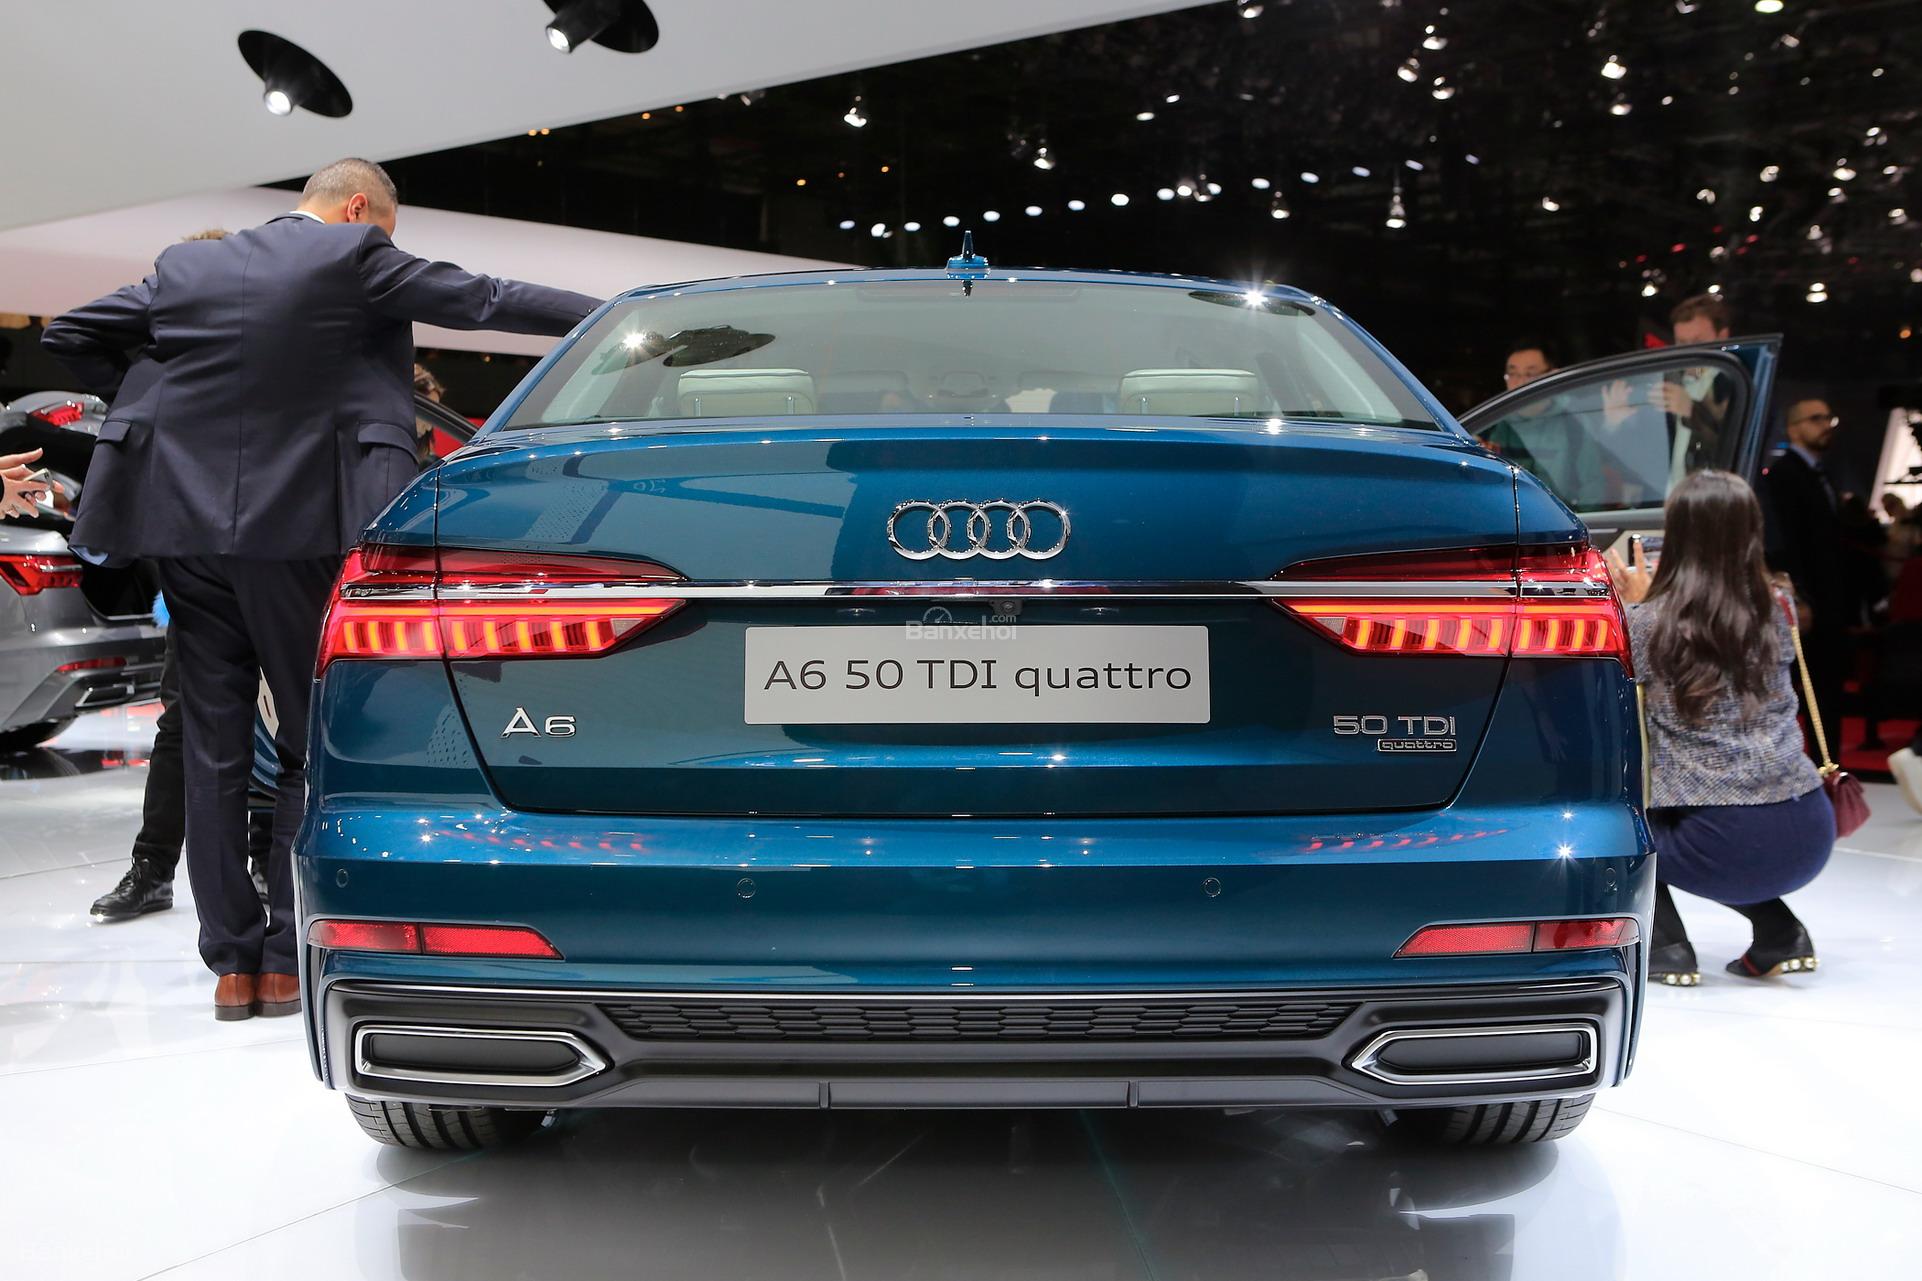 Đánh giá xe Audi A6 về thiết kế đuôi xe 1a